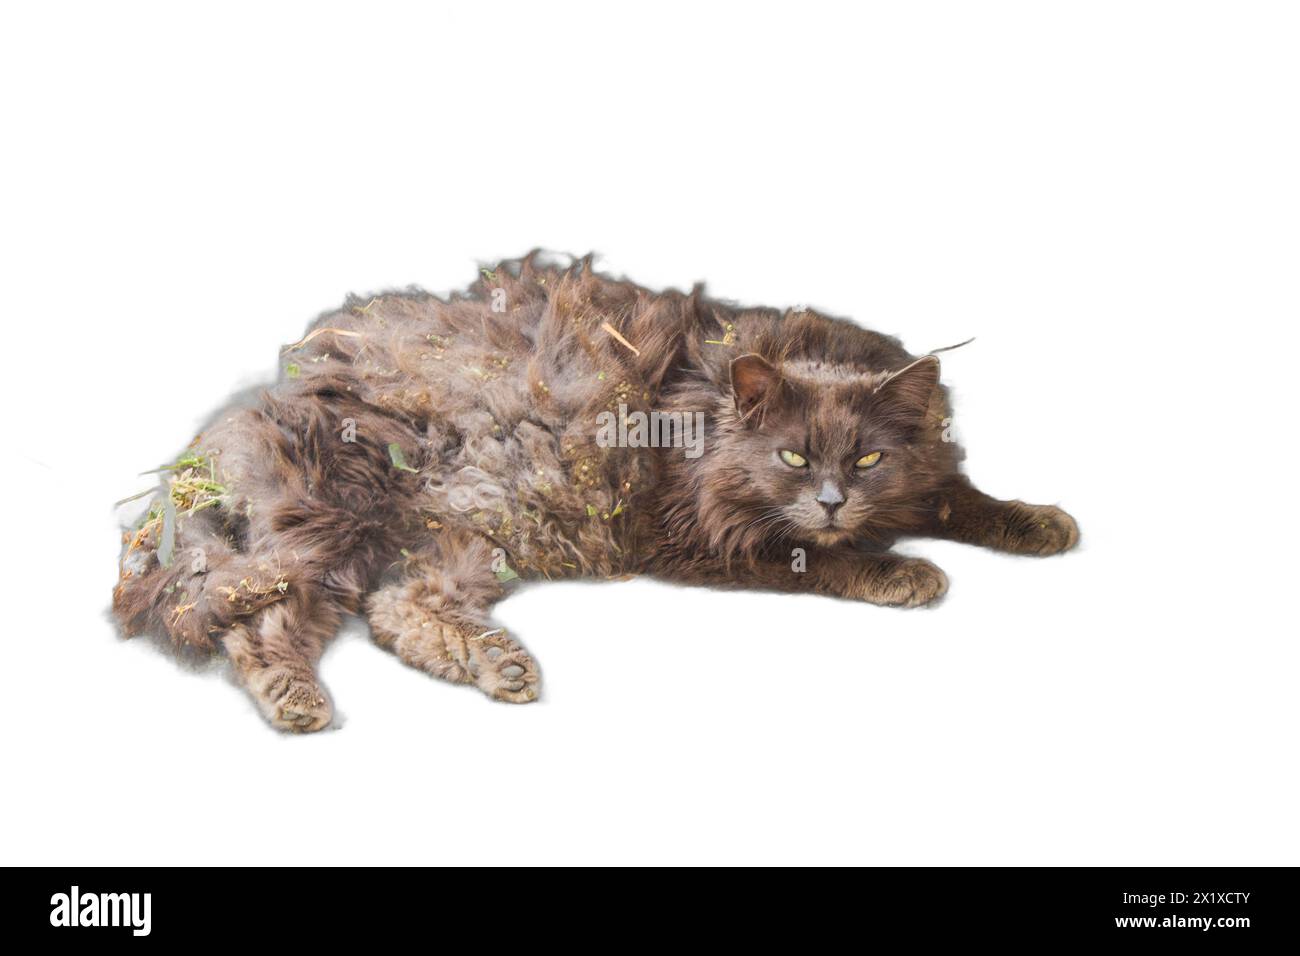 Ein isoliertes Bild einer Katze, die mit Schmutz bedeckt und mit Knoten verfilzt ist. Ideal für Tierrettungskampagnen, Haustierpflegedienste, an Stockfoto